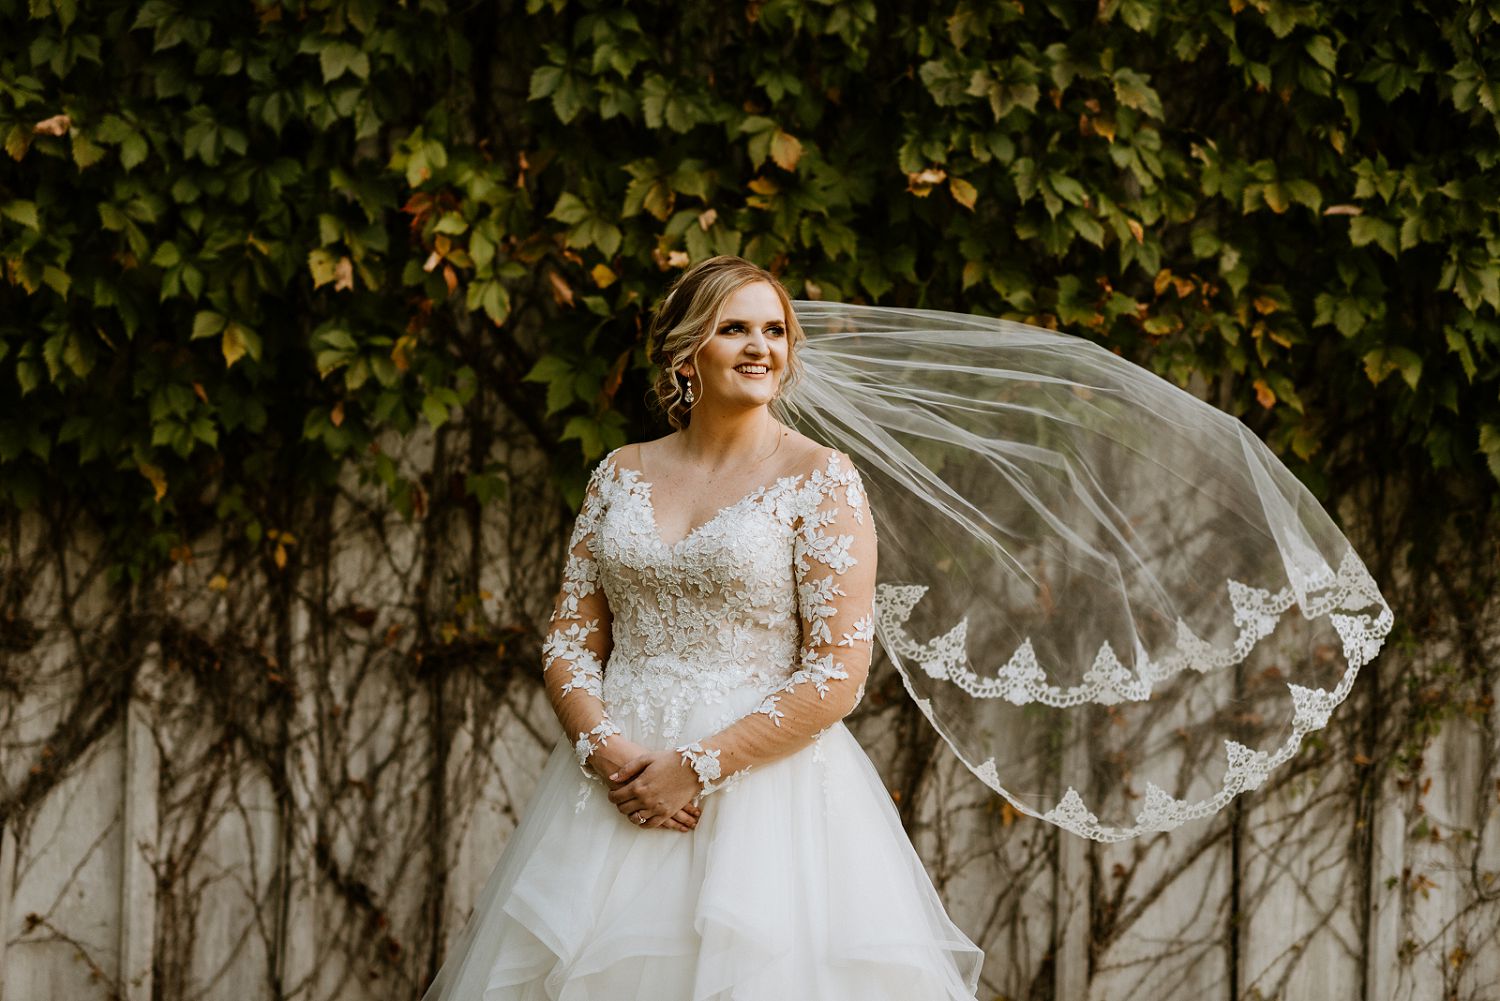 bride's veil blowing in wind